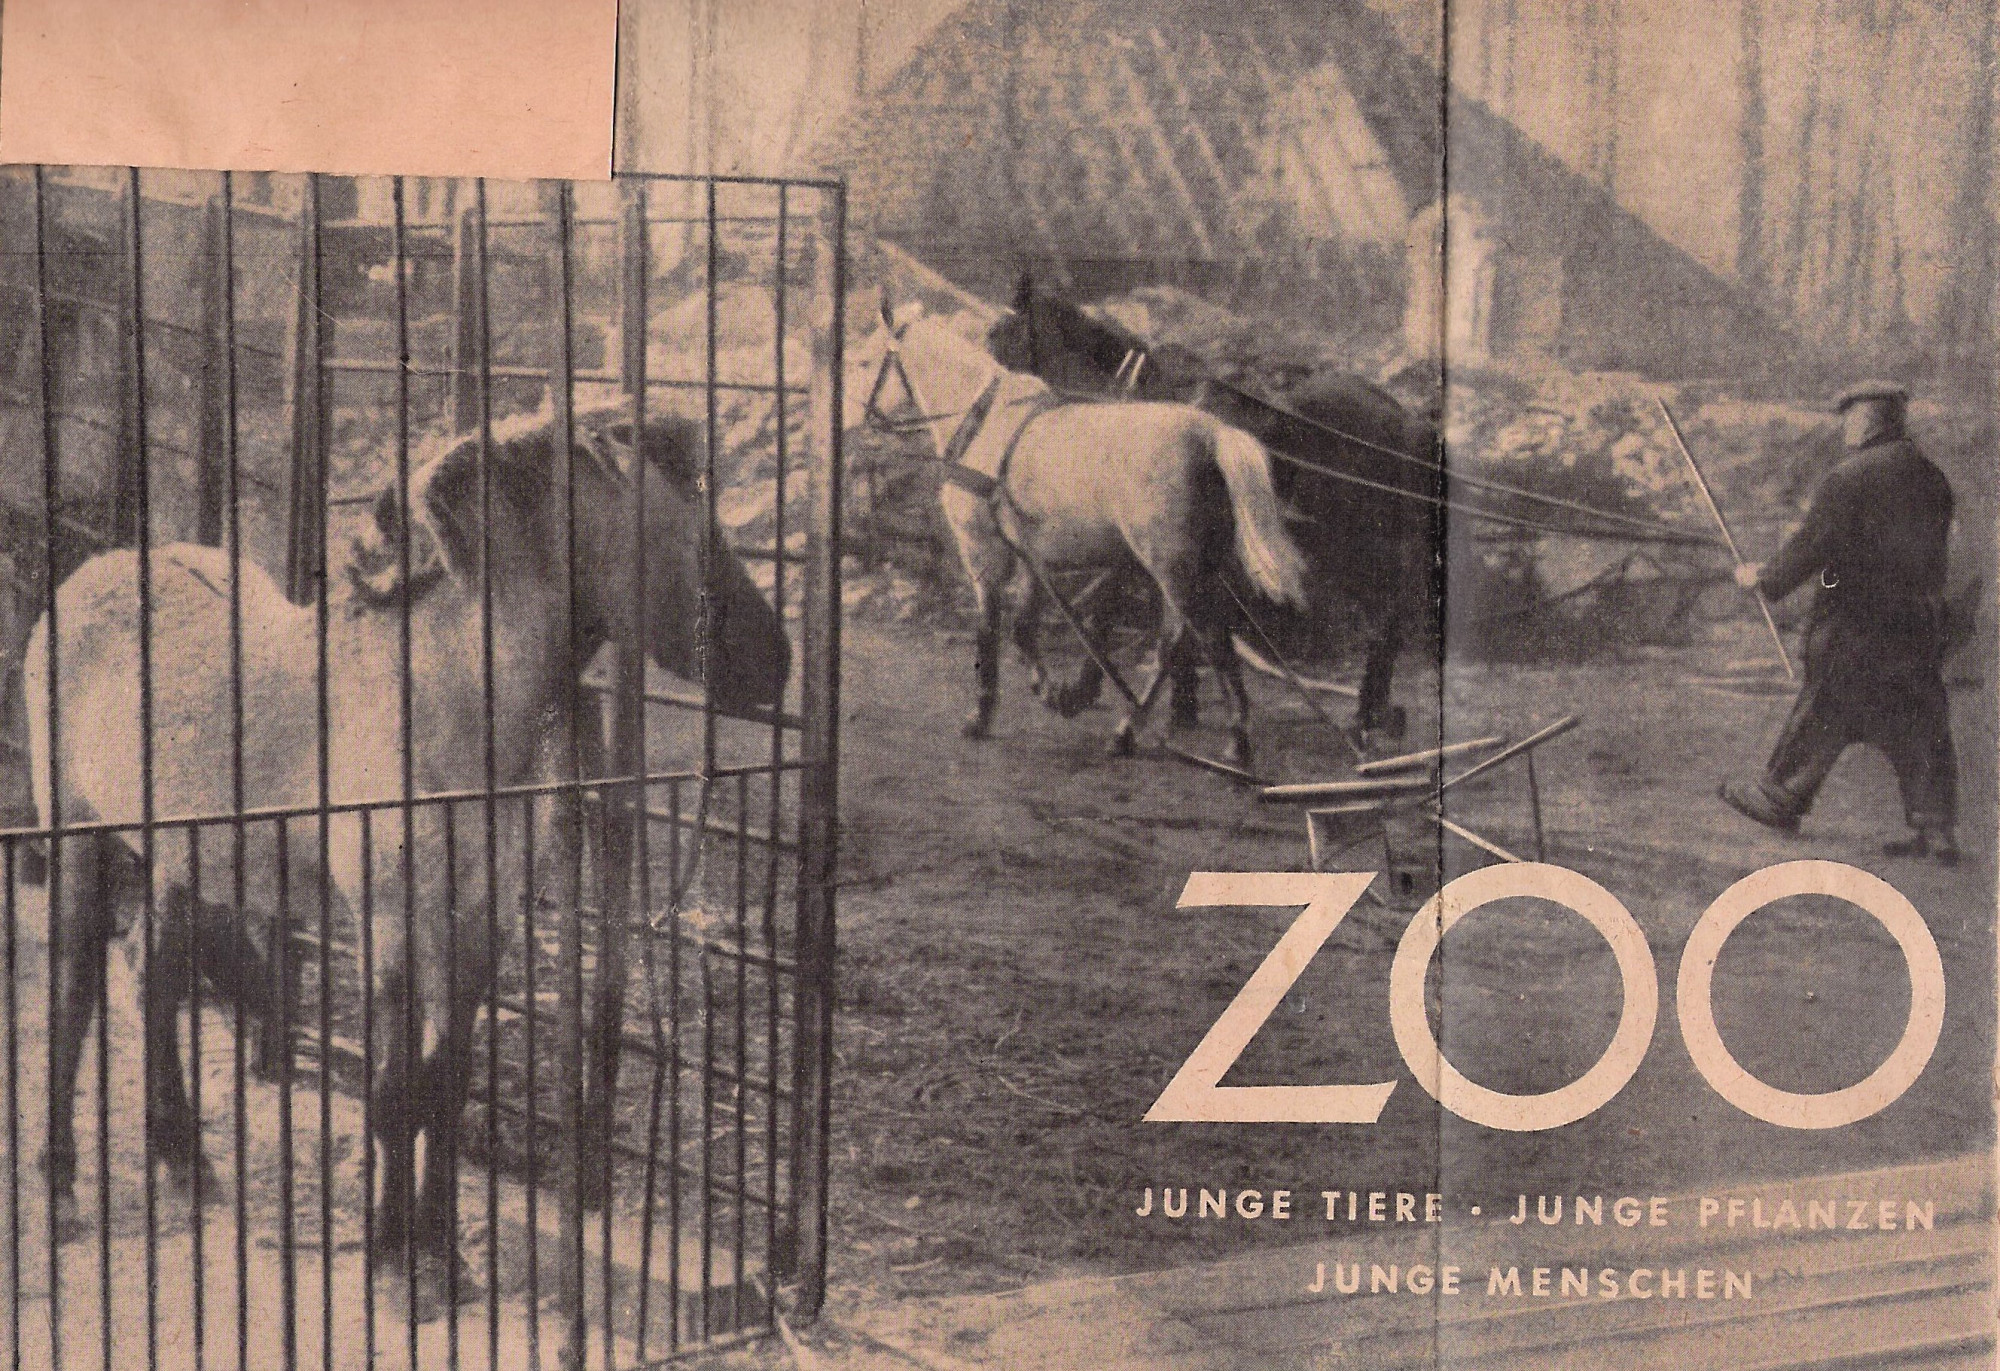 Zeitungsausschnitt. Überschrift: Zoo. junge Tiere, junge Pflanzen, junge Menschen. Foto: Person mit Pflug, vor den ein dunkles und ein helles Pferd gespannt sind. Seitlich steht ein kleines Huftier in einem Gitterkäfig.